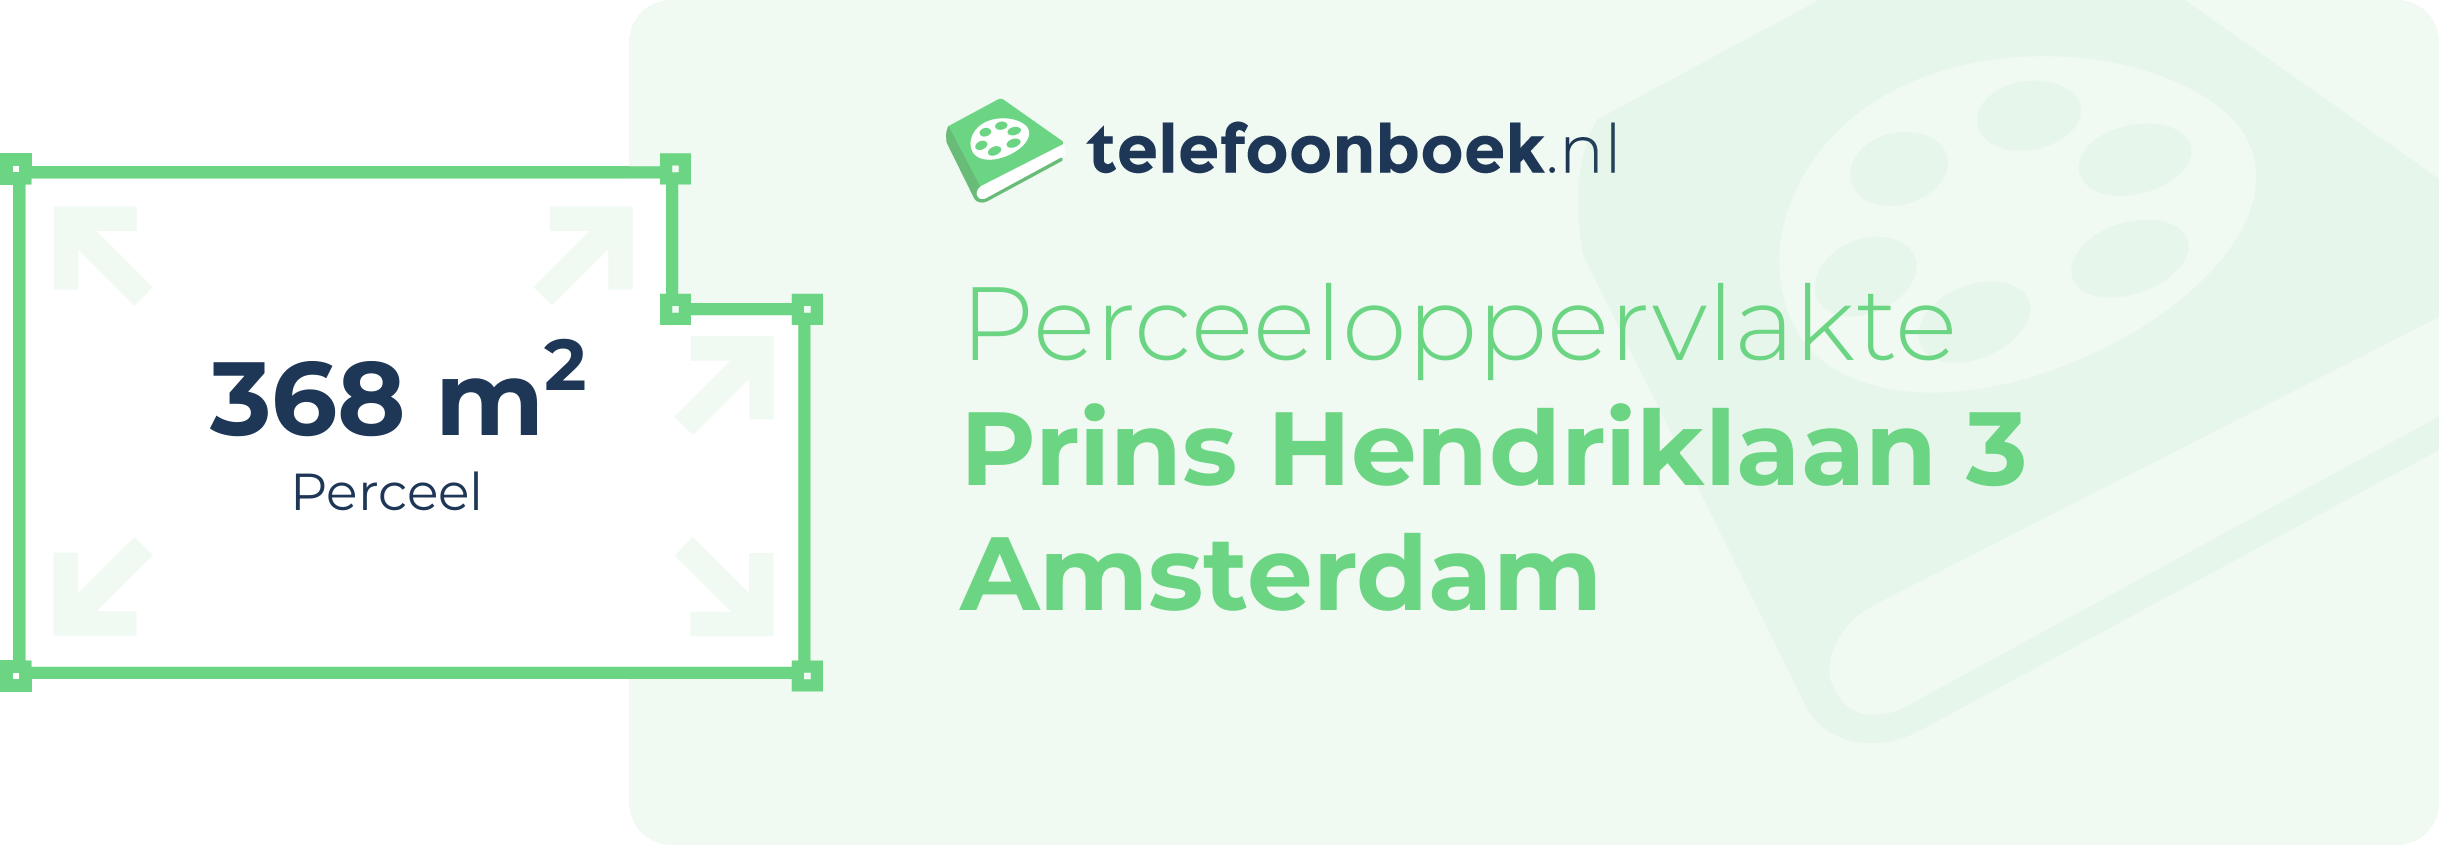 Perceeloppervlakte Prins Hendriklaan 3 Amsterdam